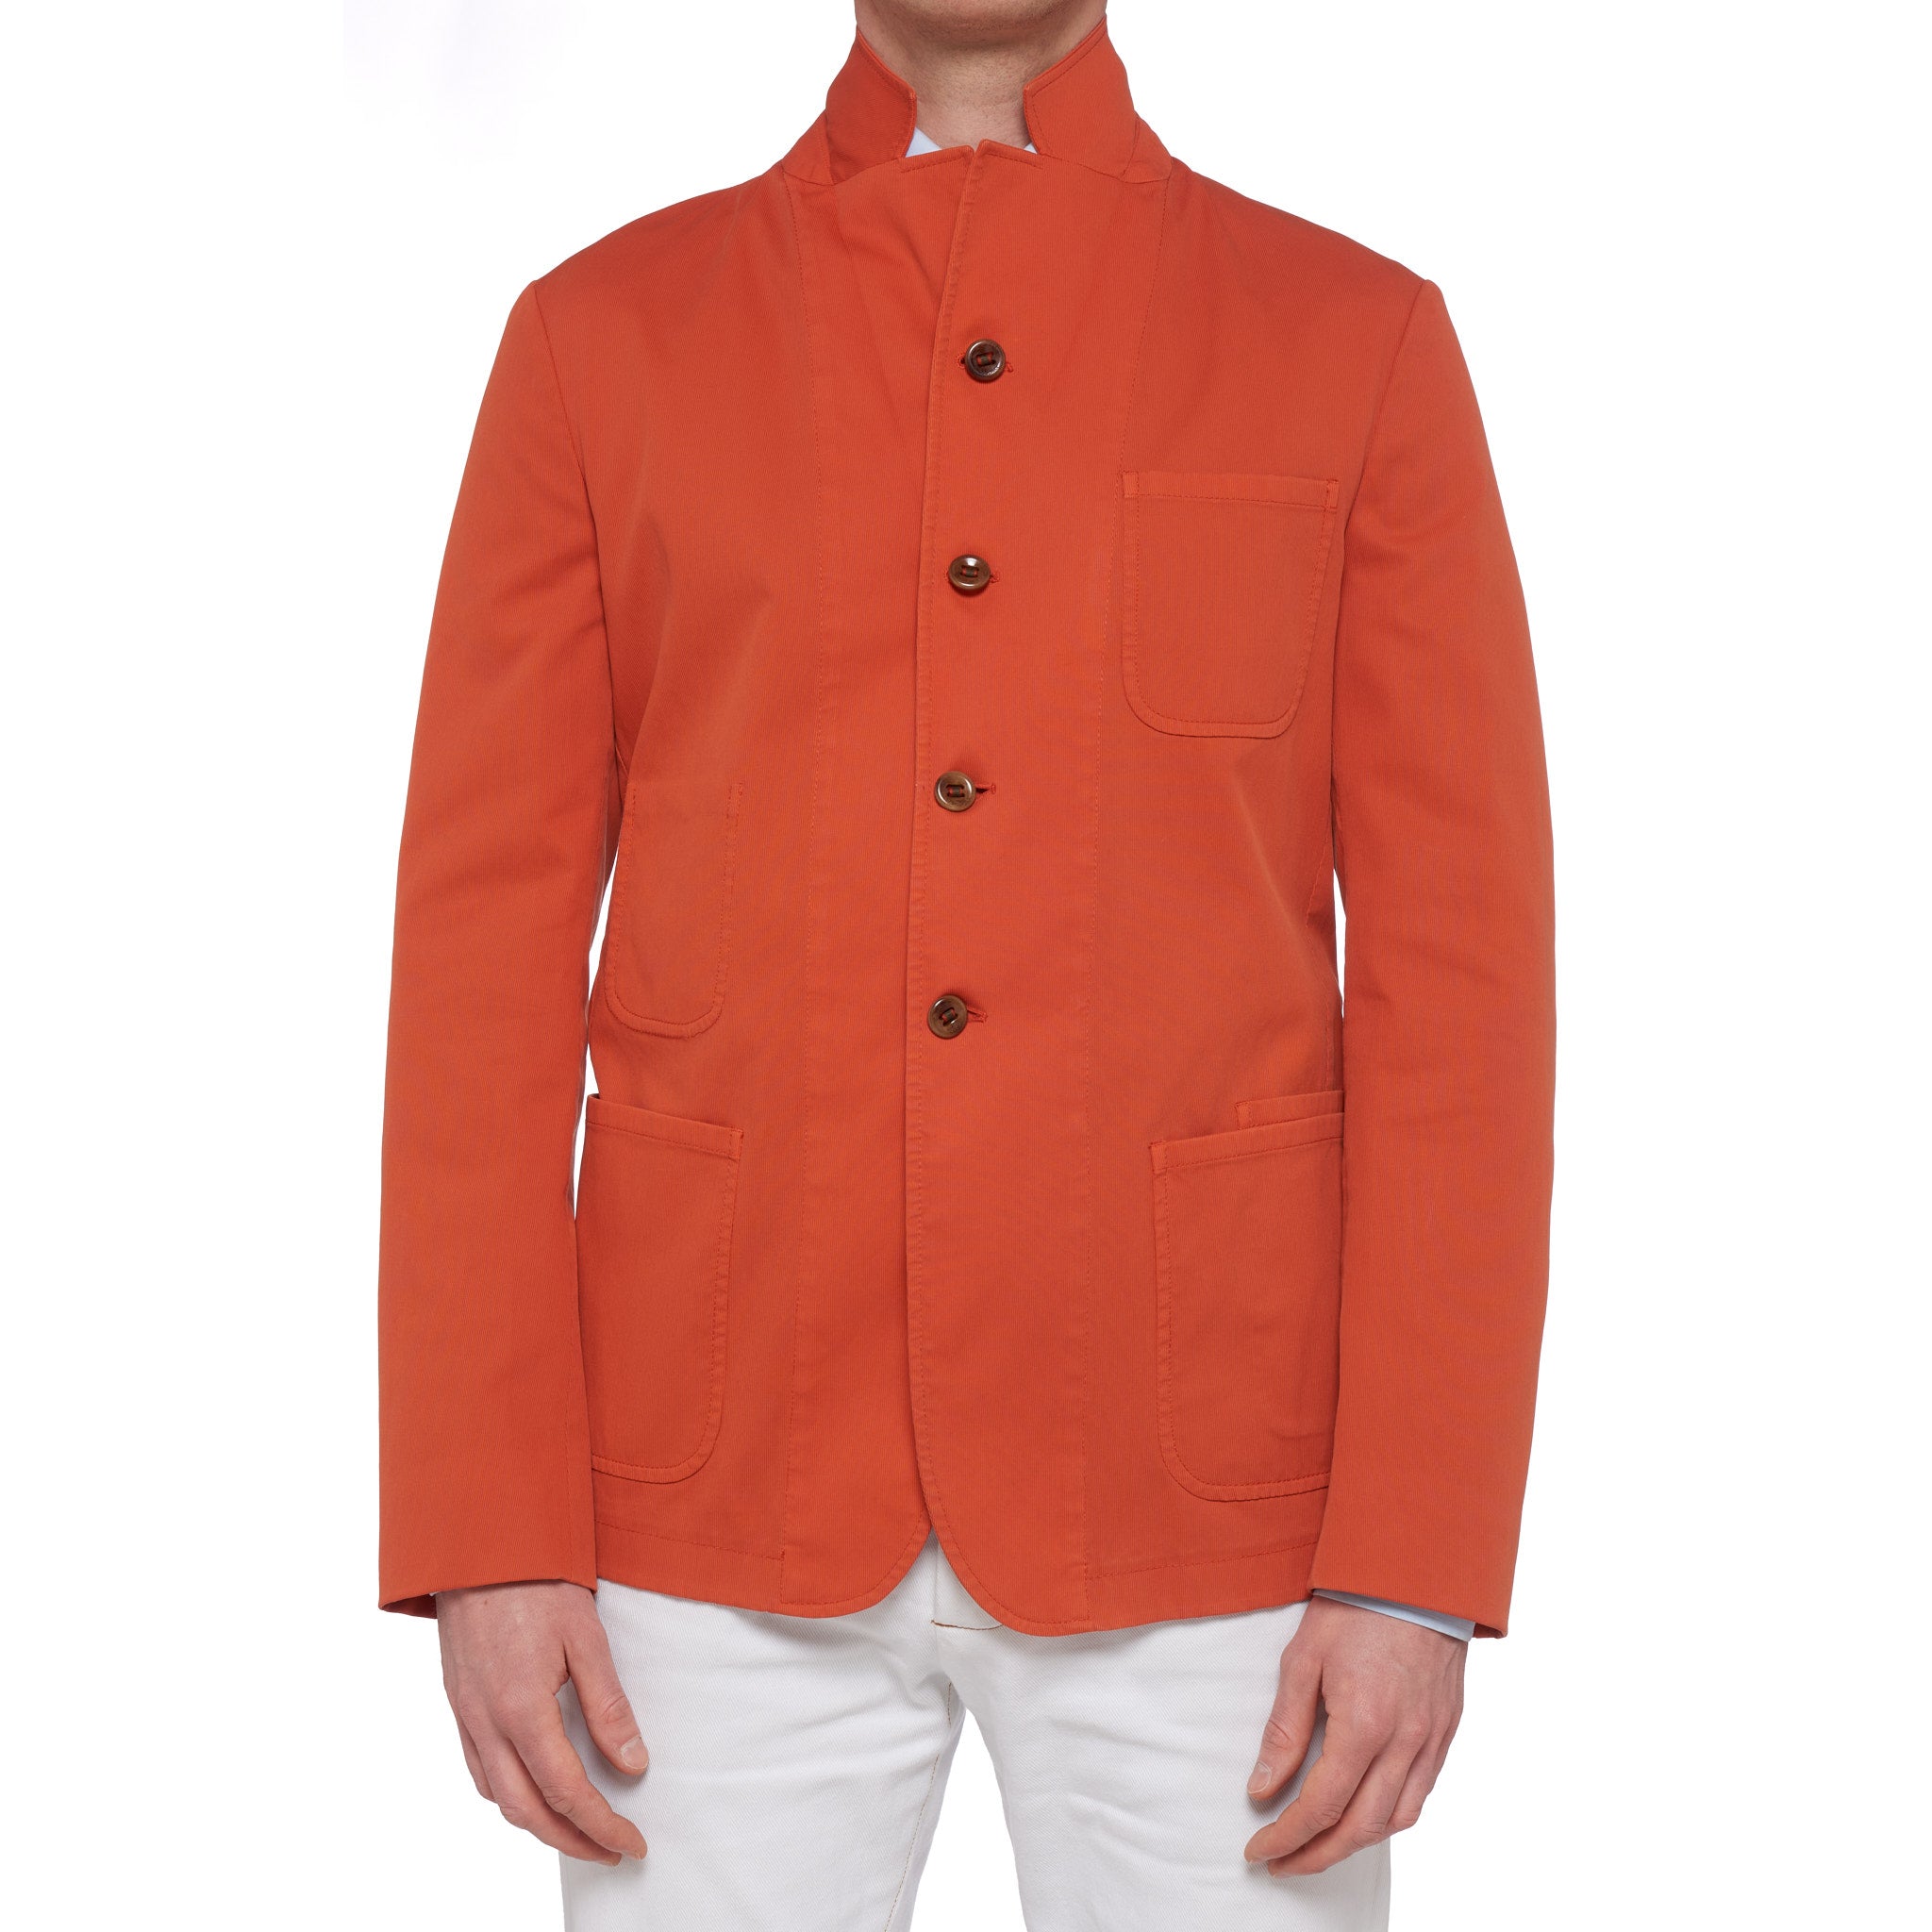 BOGLIOLI Galleria "74" Orange Cotton 4 Button Unlined Jersey Jacket 50 NEW US 40 BOGLIOLI